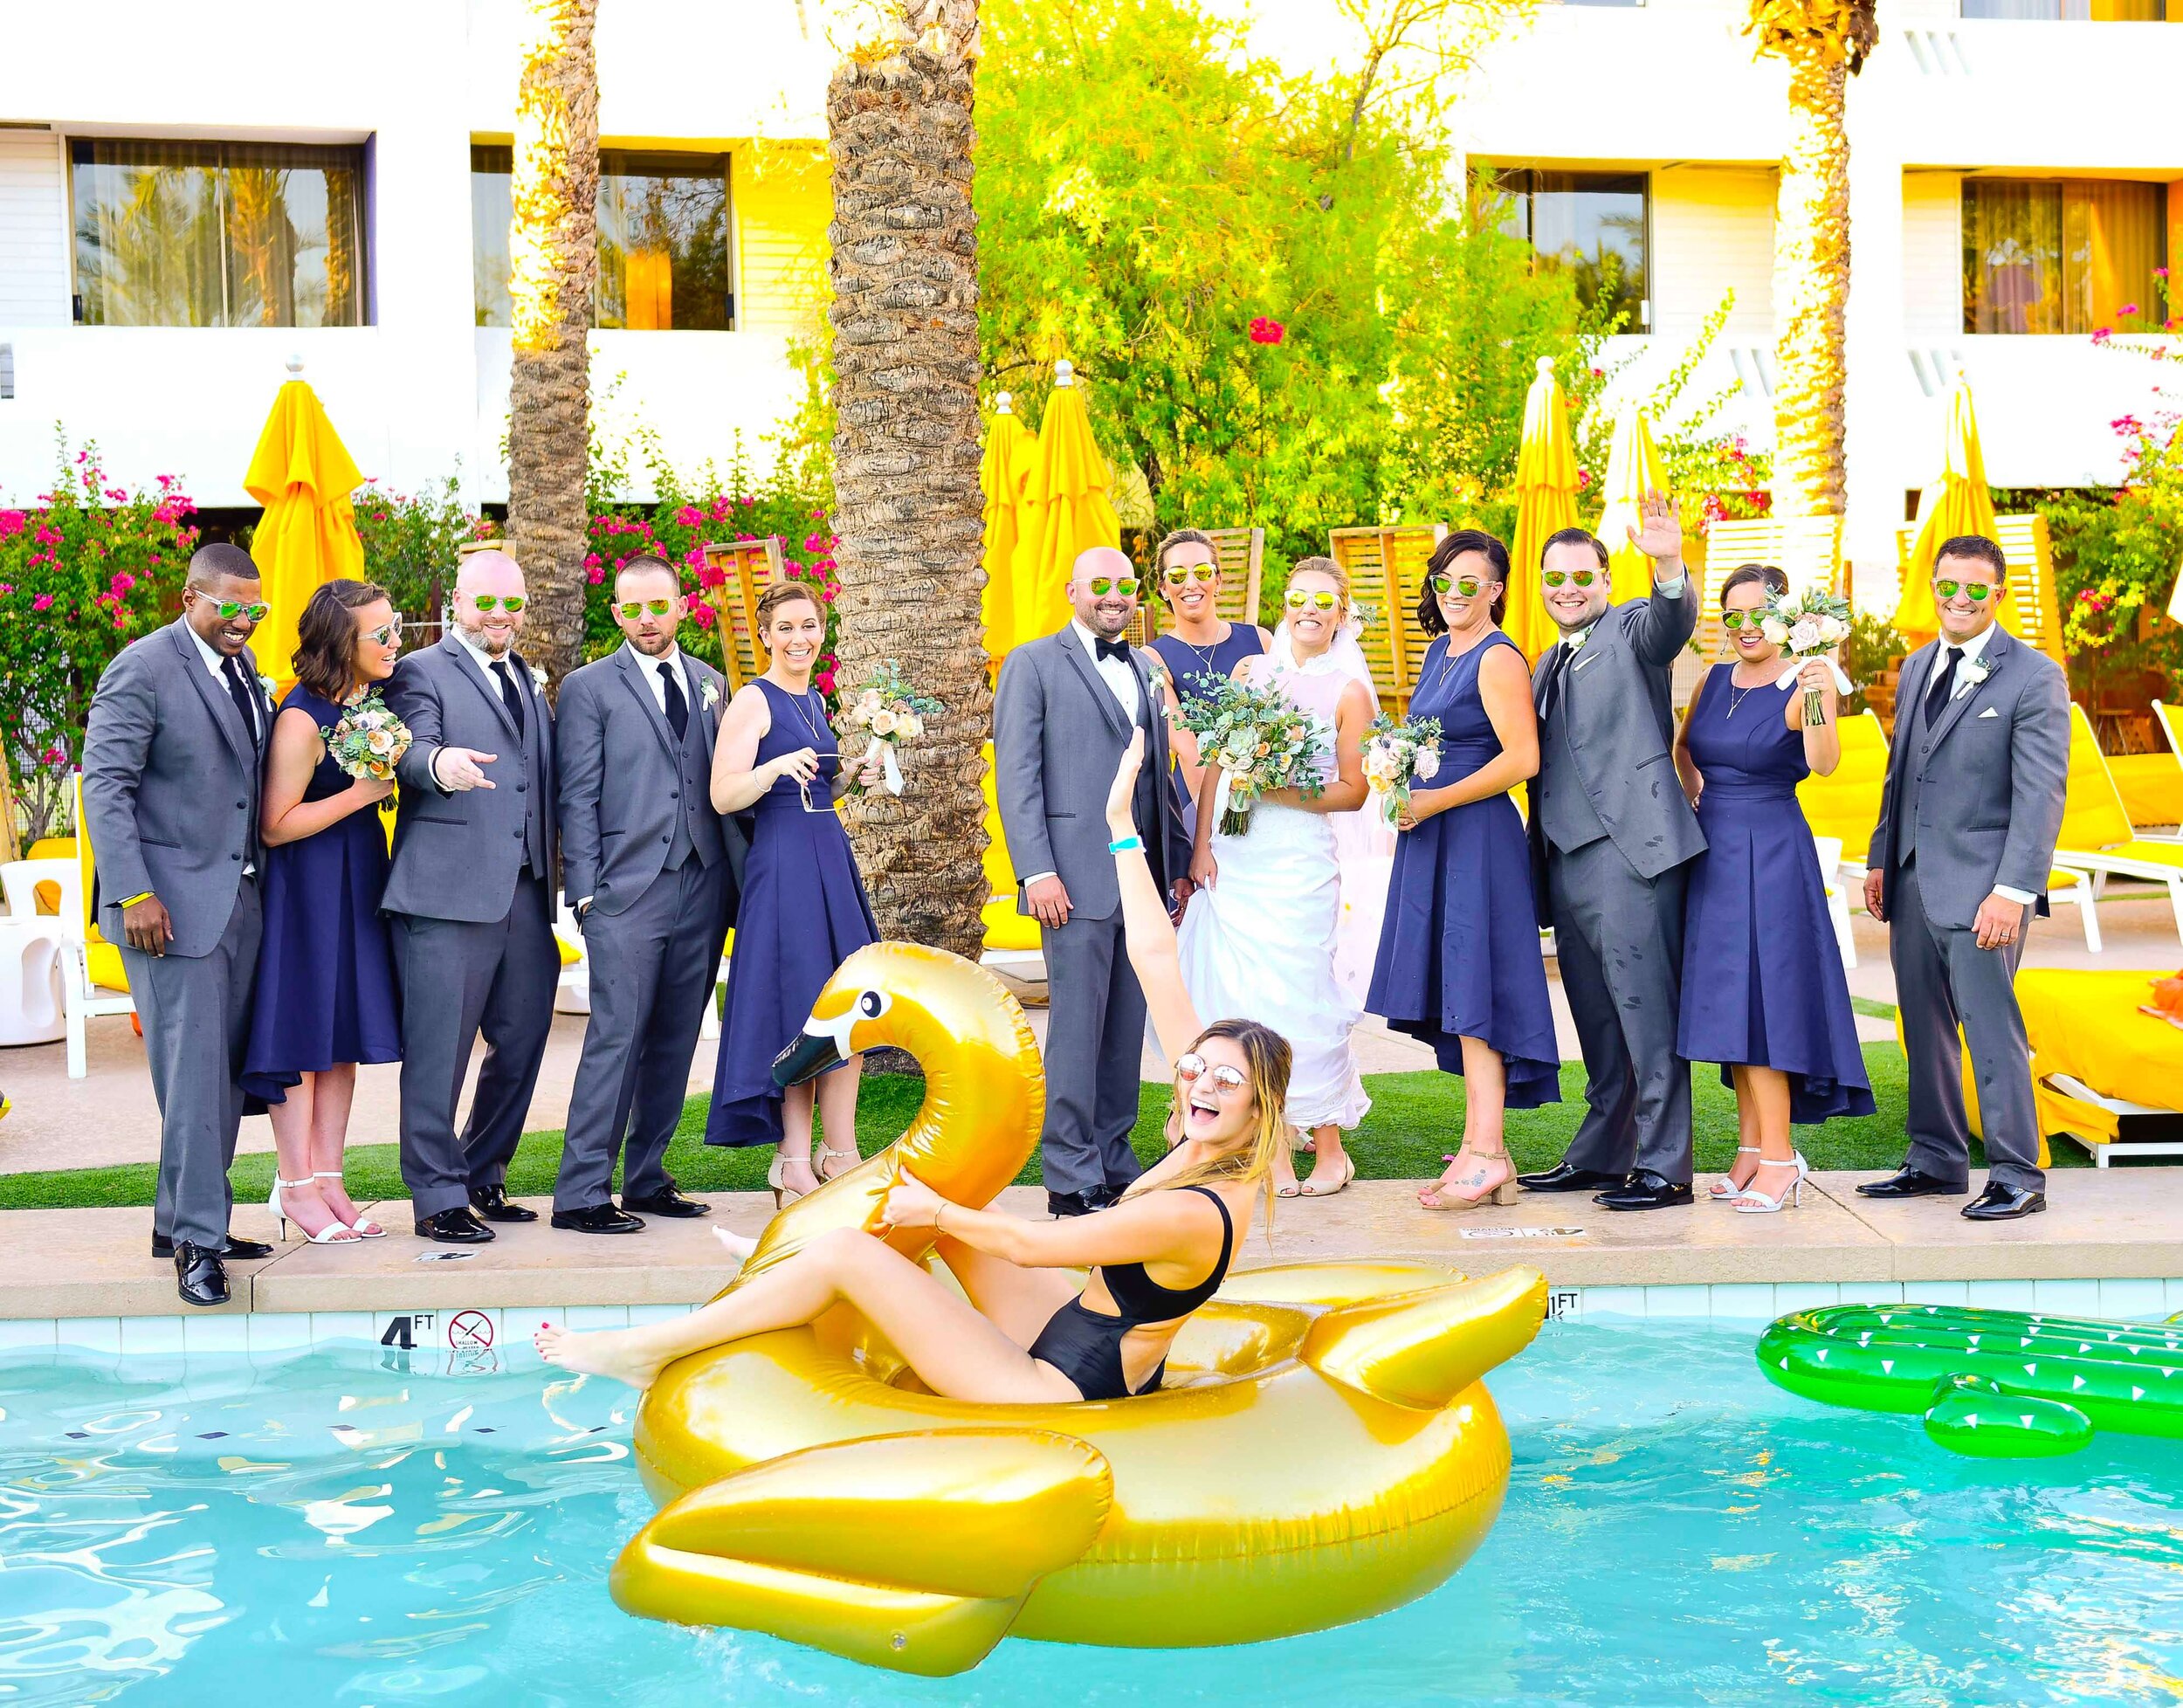 Wedding bridal party photo at The Saguaro Scottsdale in Scottsdale, Arizona